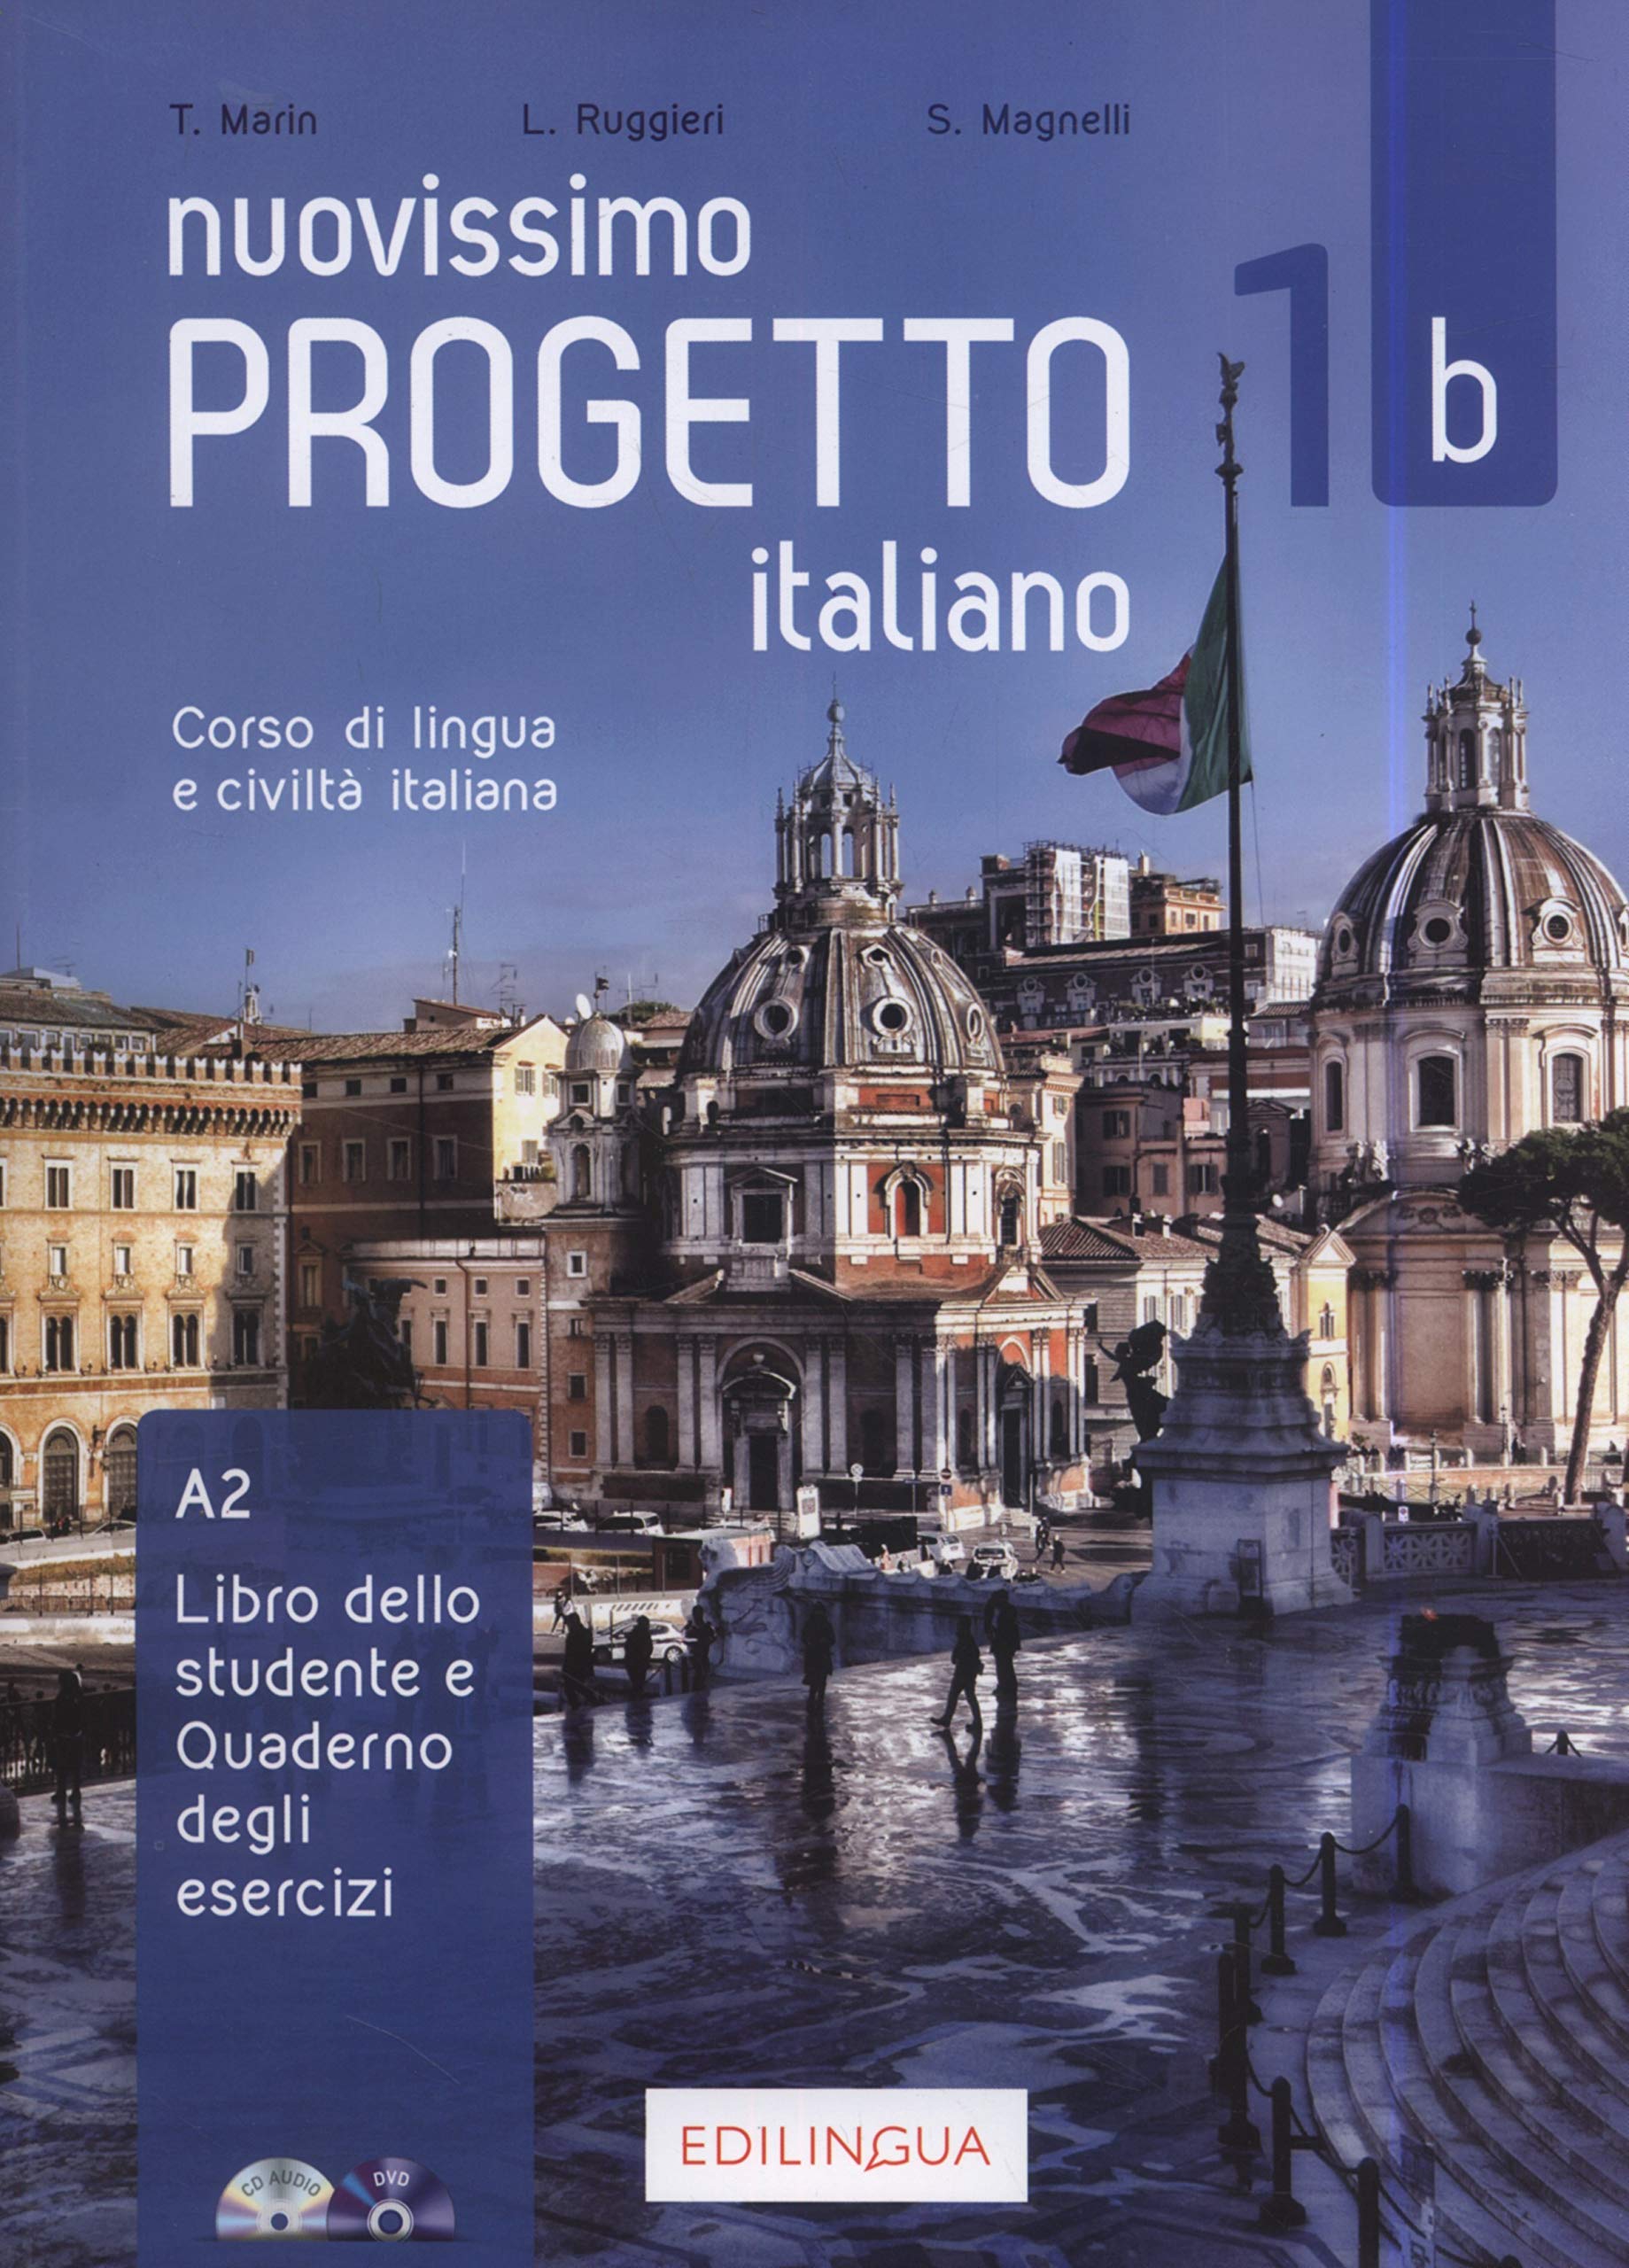 NUOVISSIMO PROGETTO ITALIANO 1b – Libro+Quaderno+CD+DVD